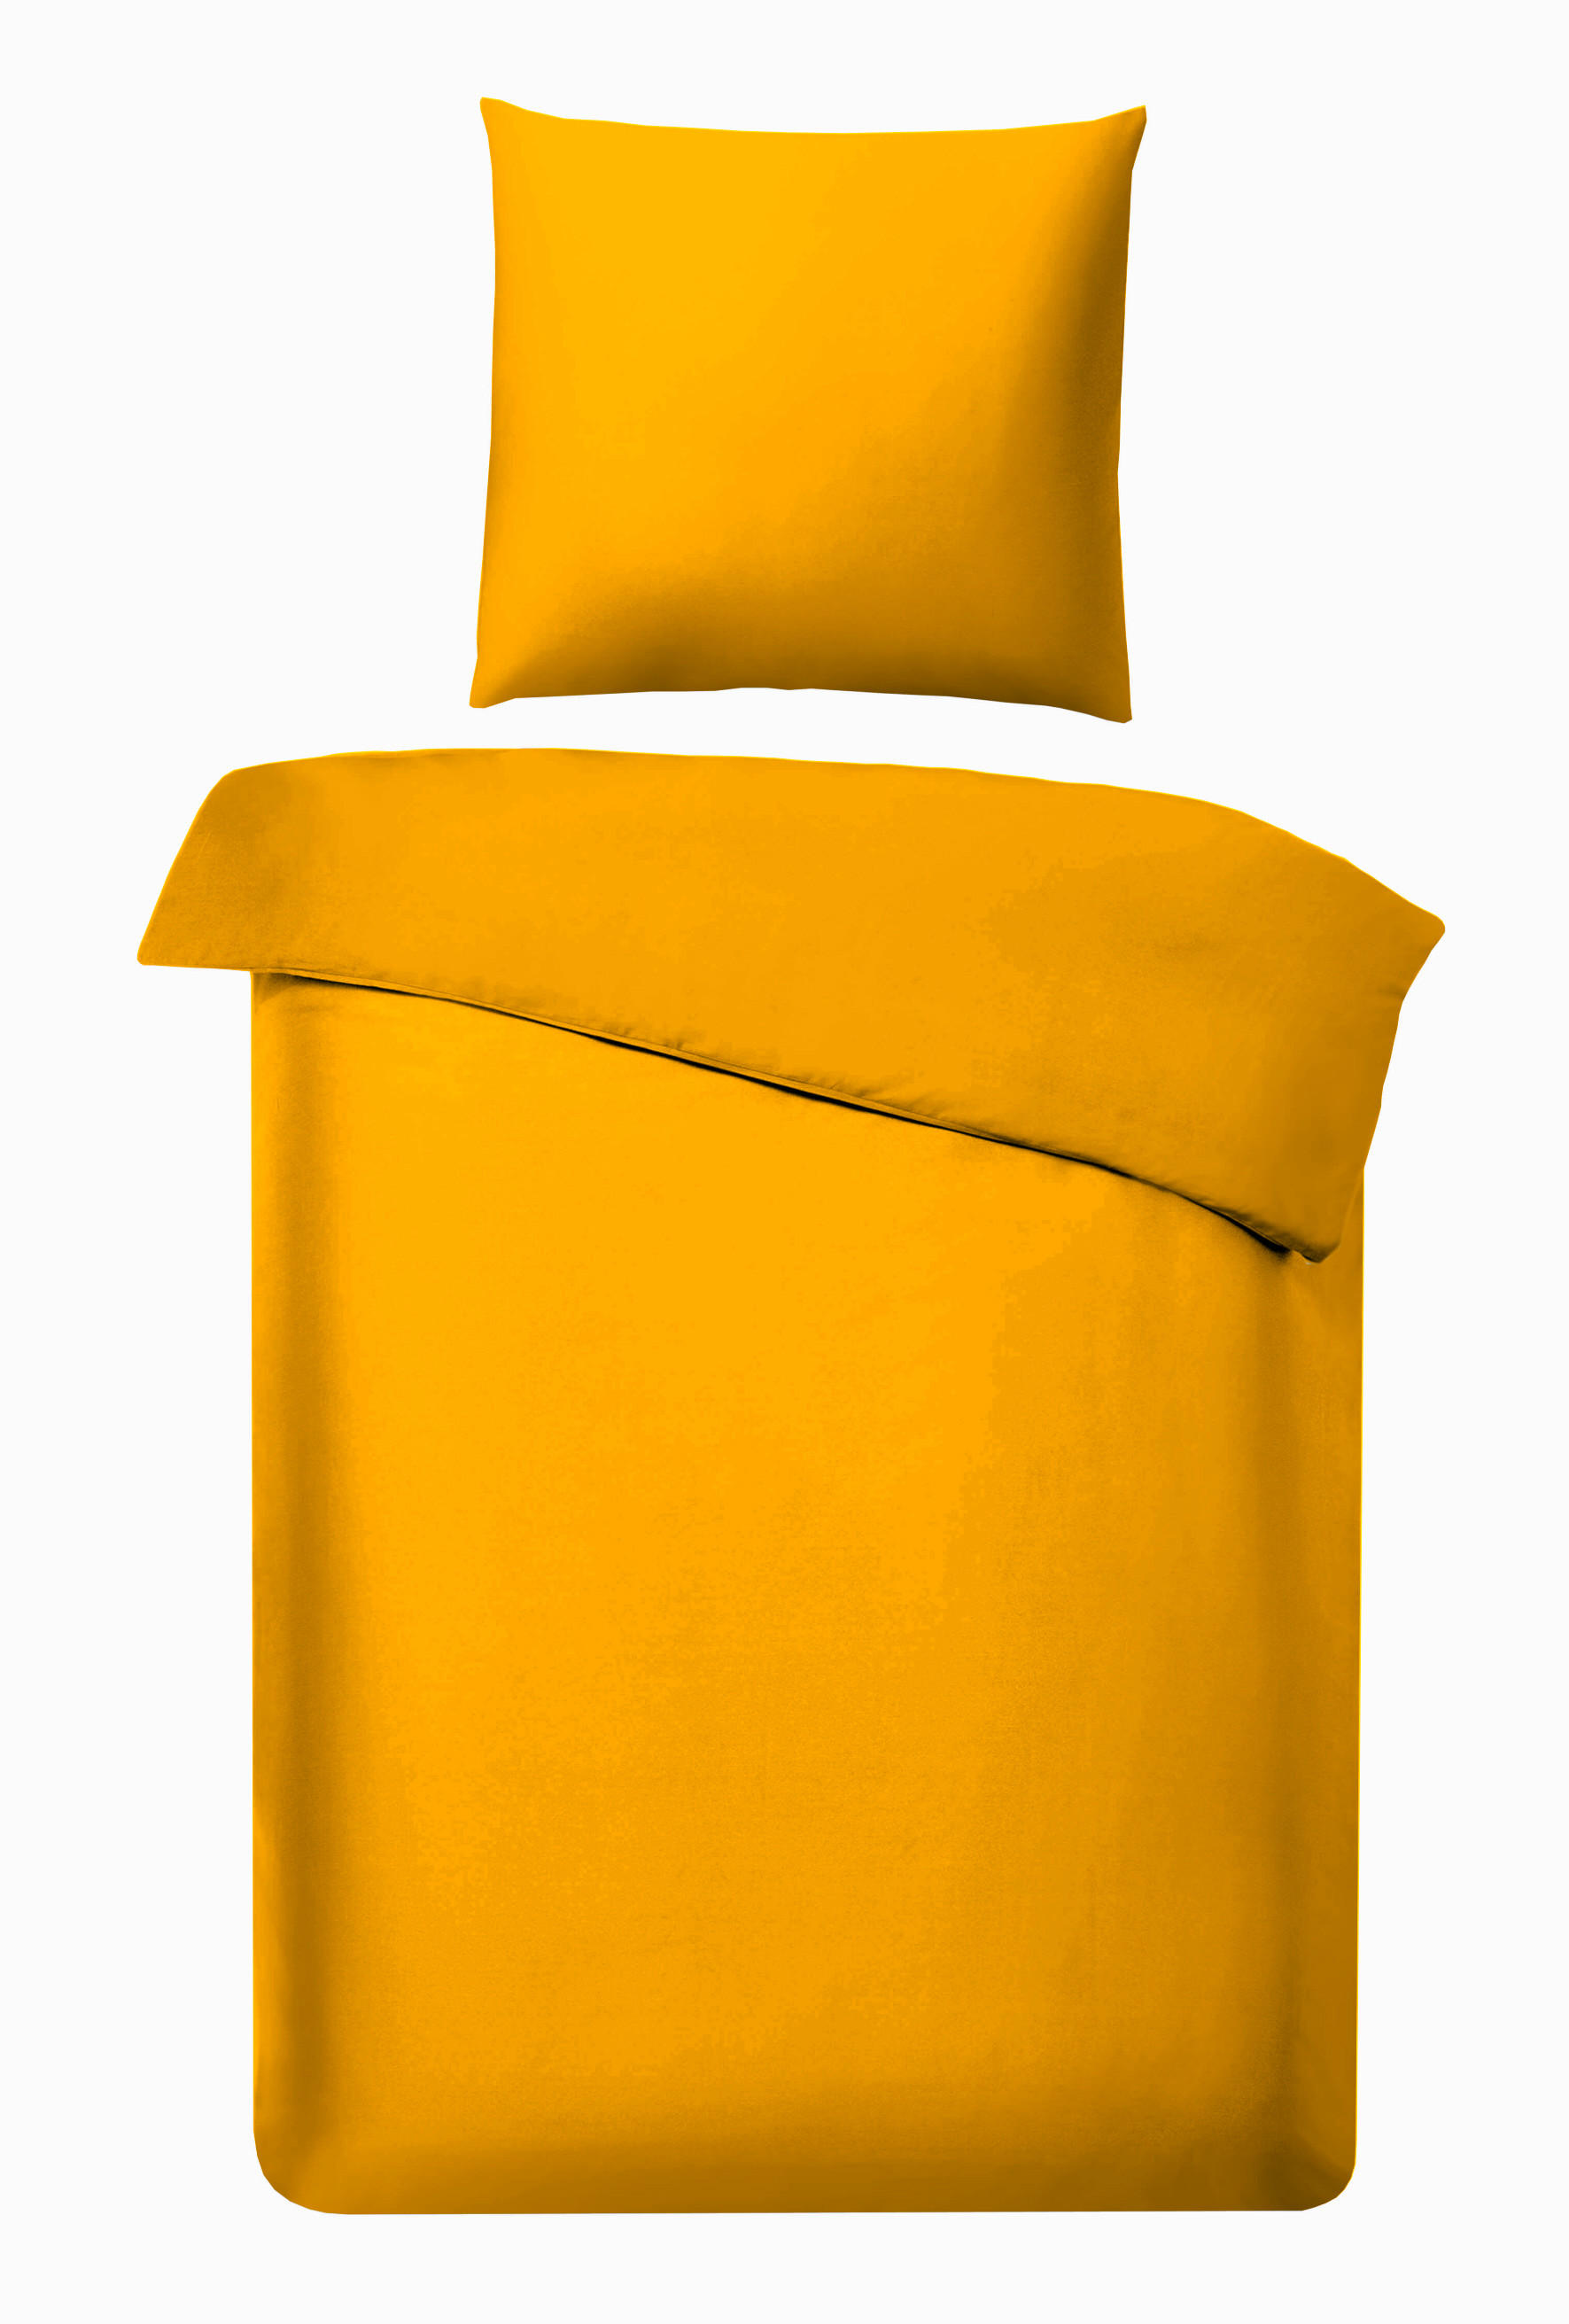 BETTWÄSCHE Flanell  - Gelb, Basics, Textil (135/200cm) - Bio:Vio